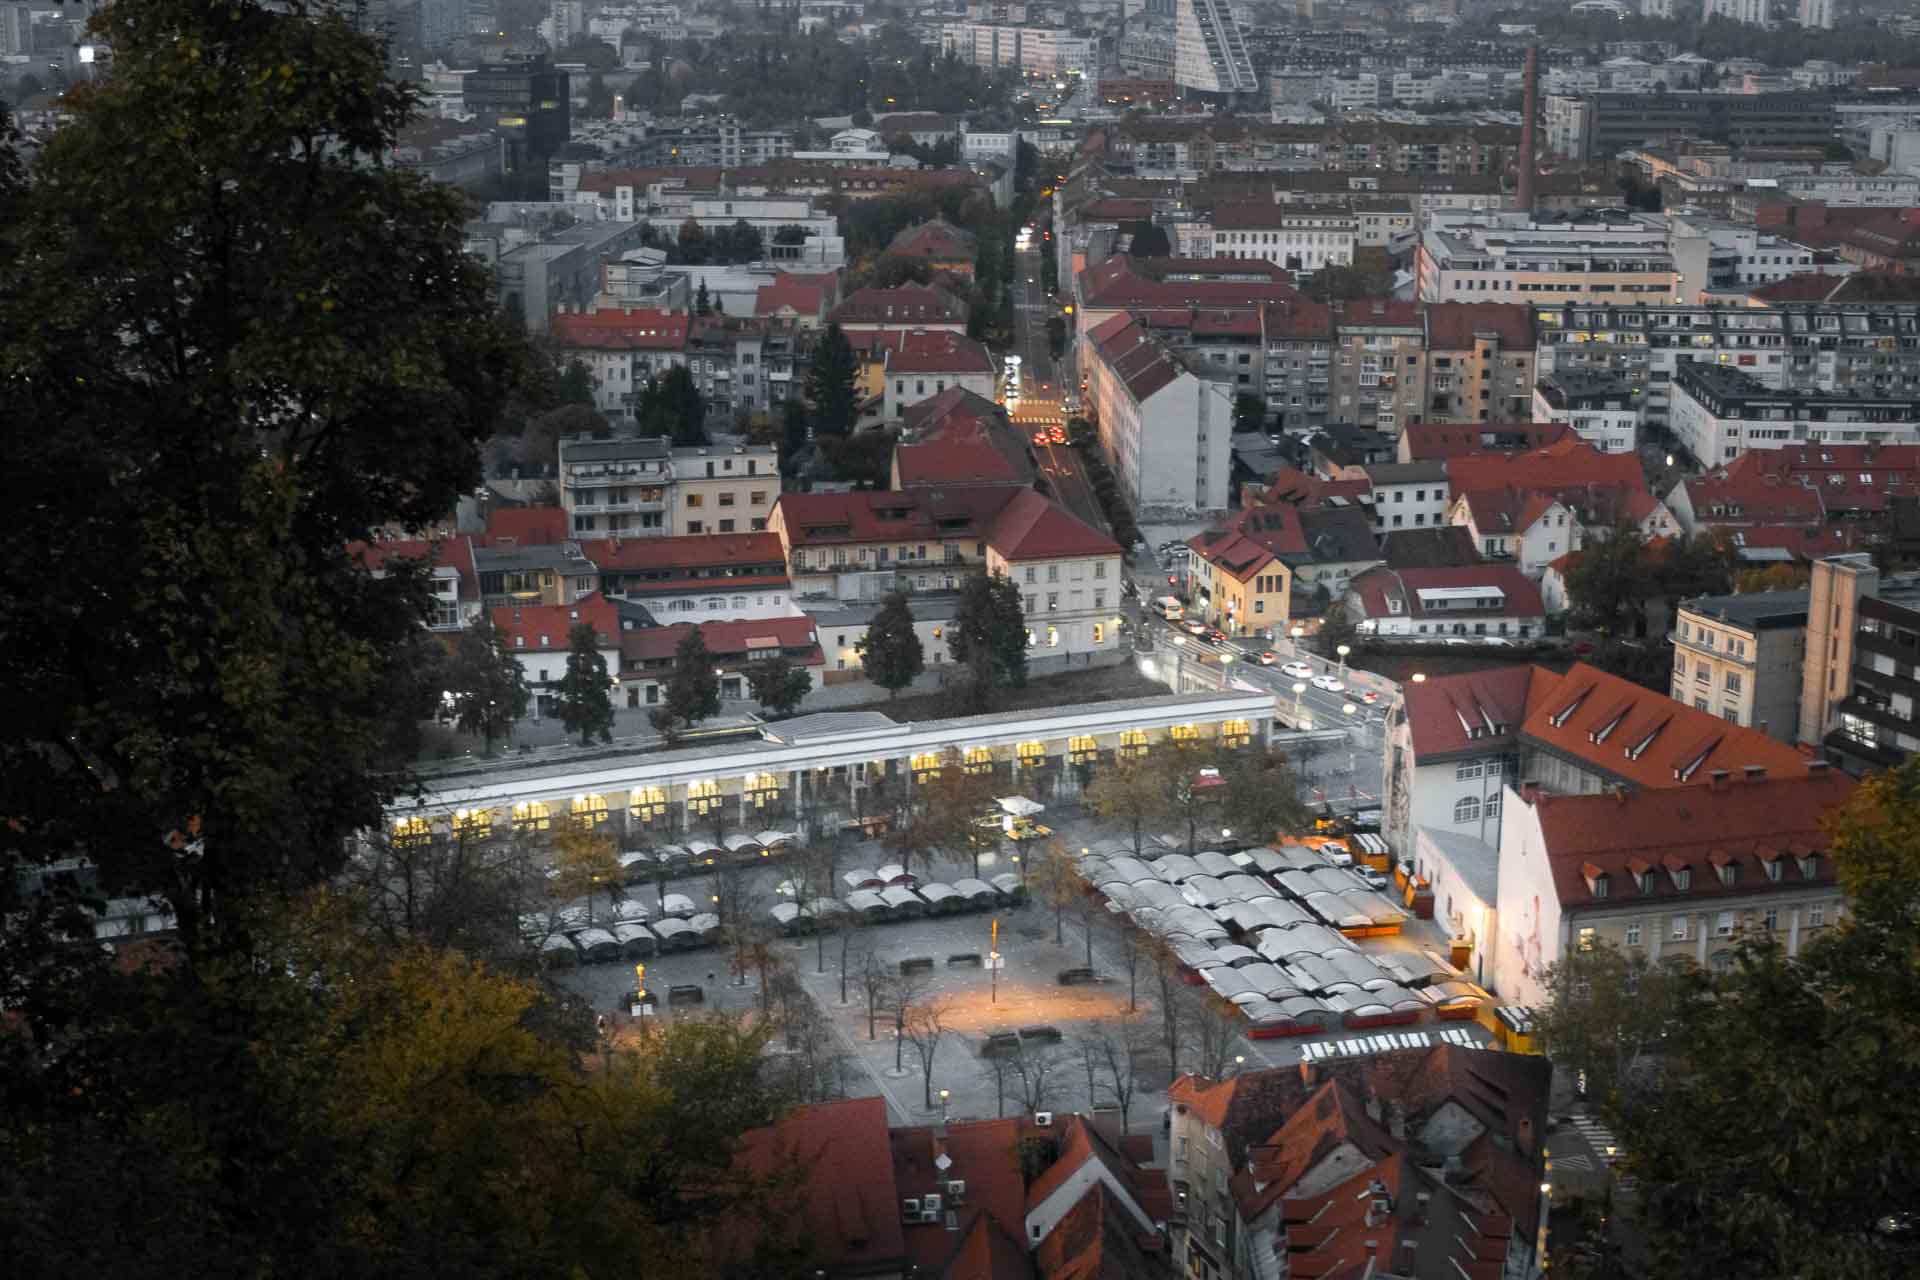 Overview of the market in Ljubljana